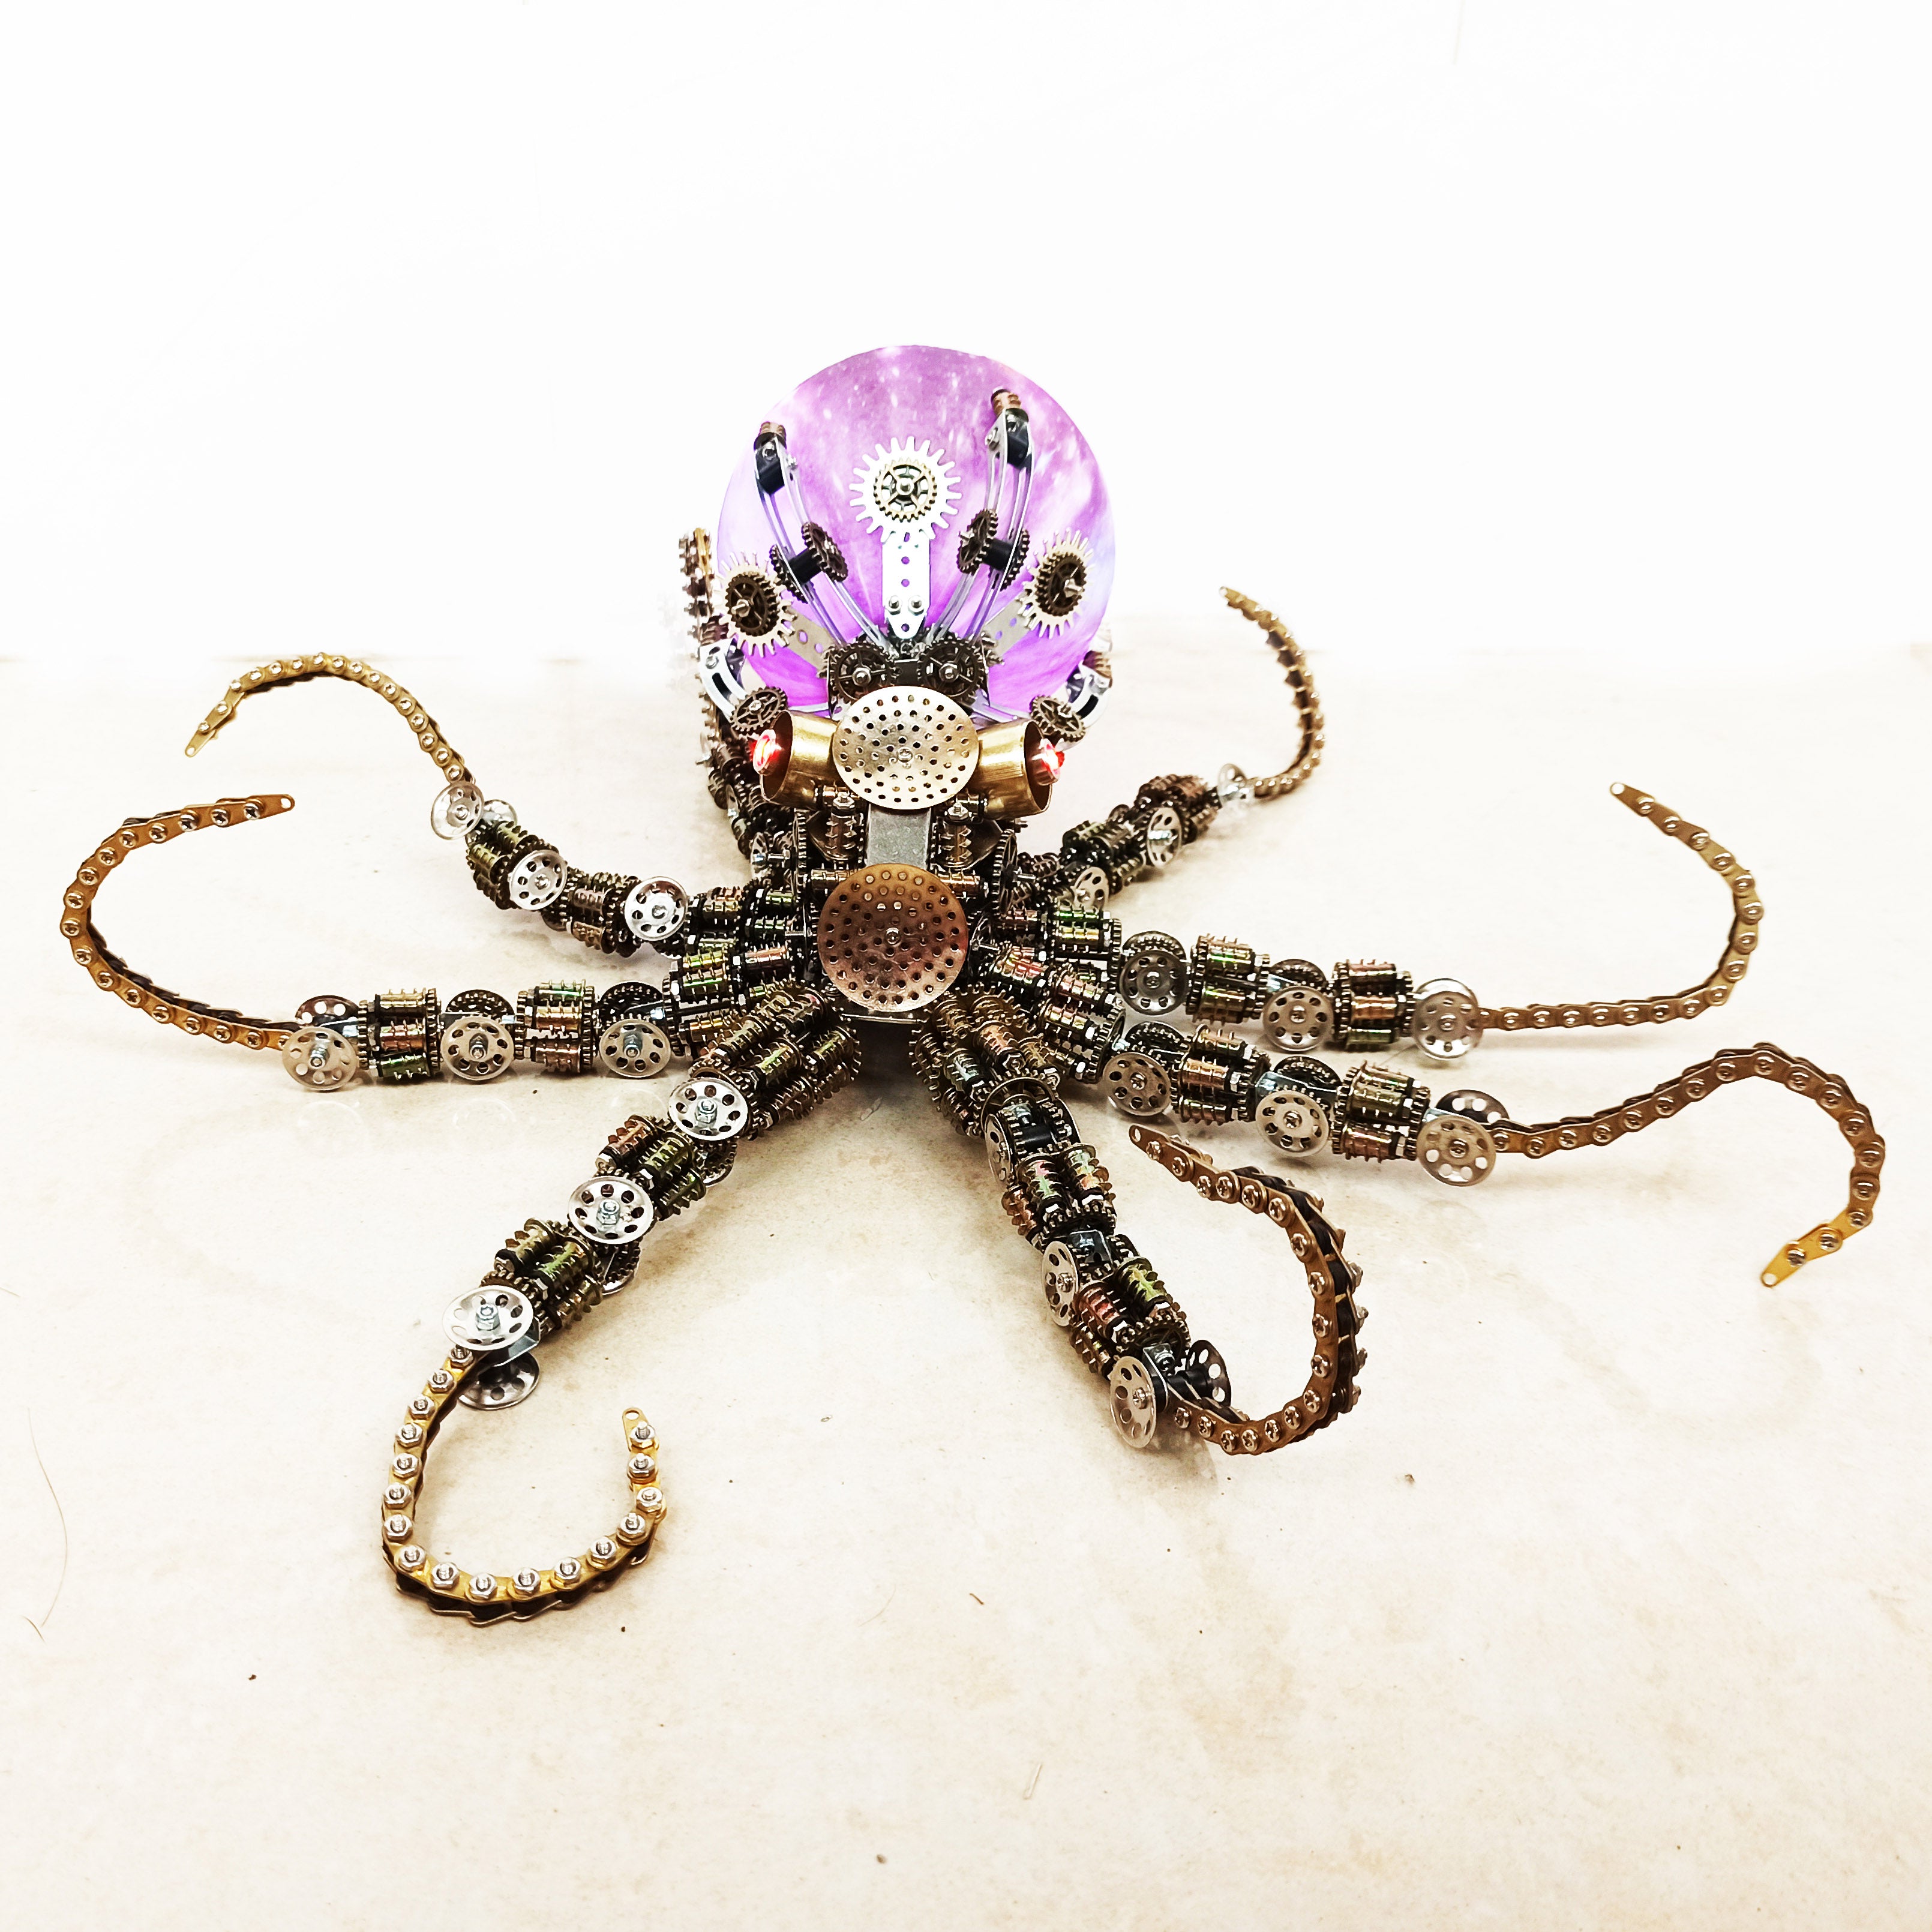 3D Mechanical Giant Octopus